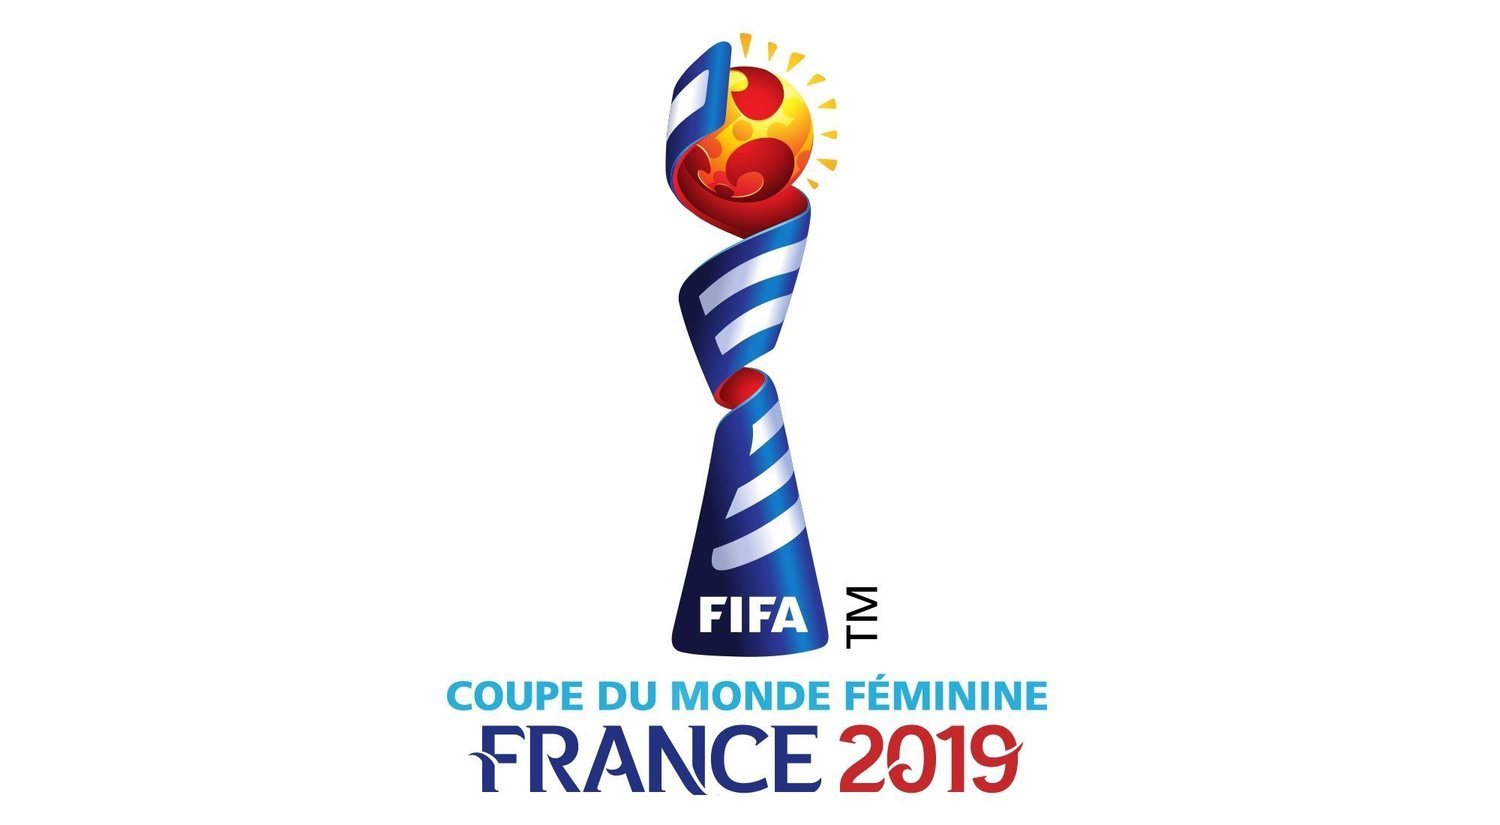 Mundial de fútbol femenino Francia 2019: la mejor guía